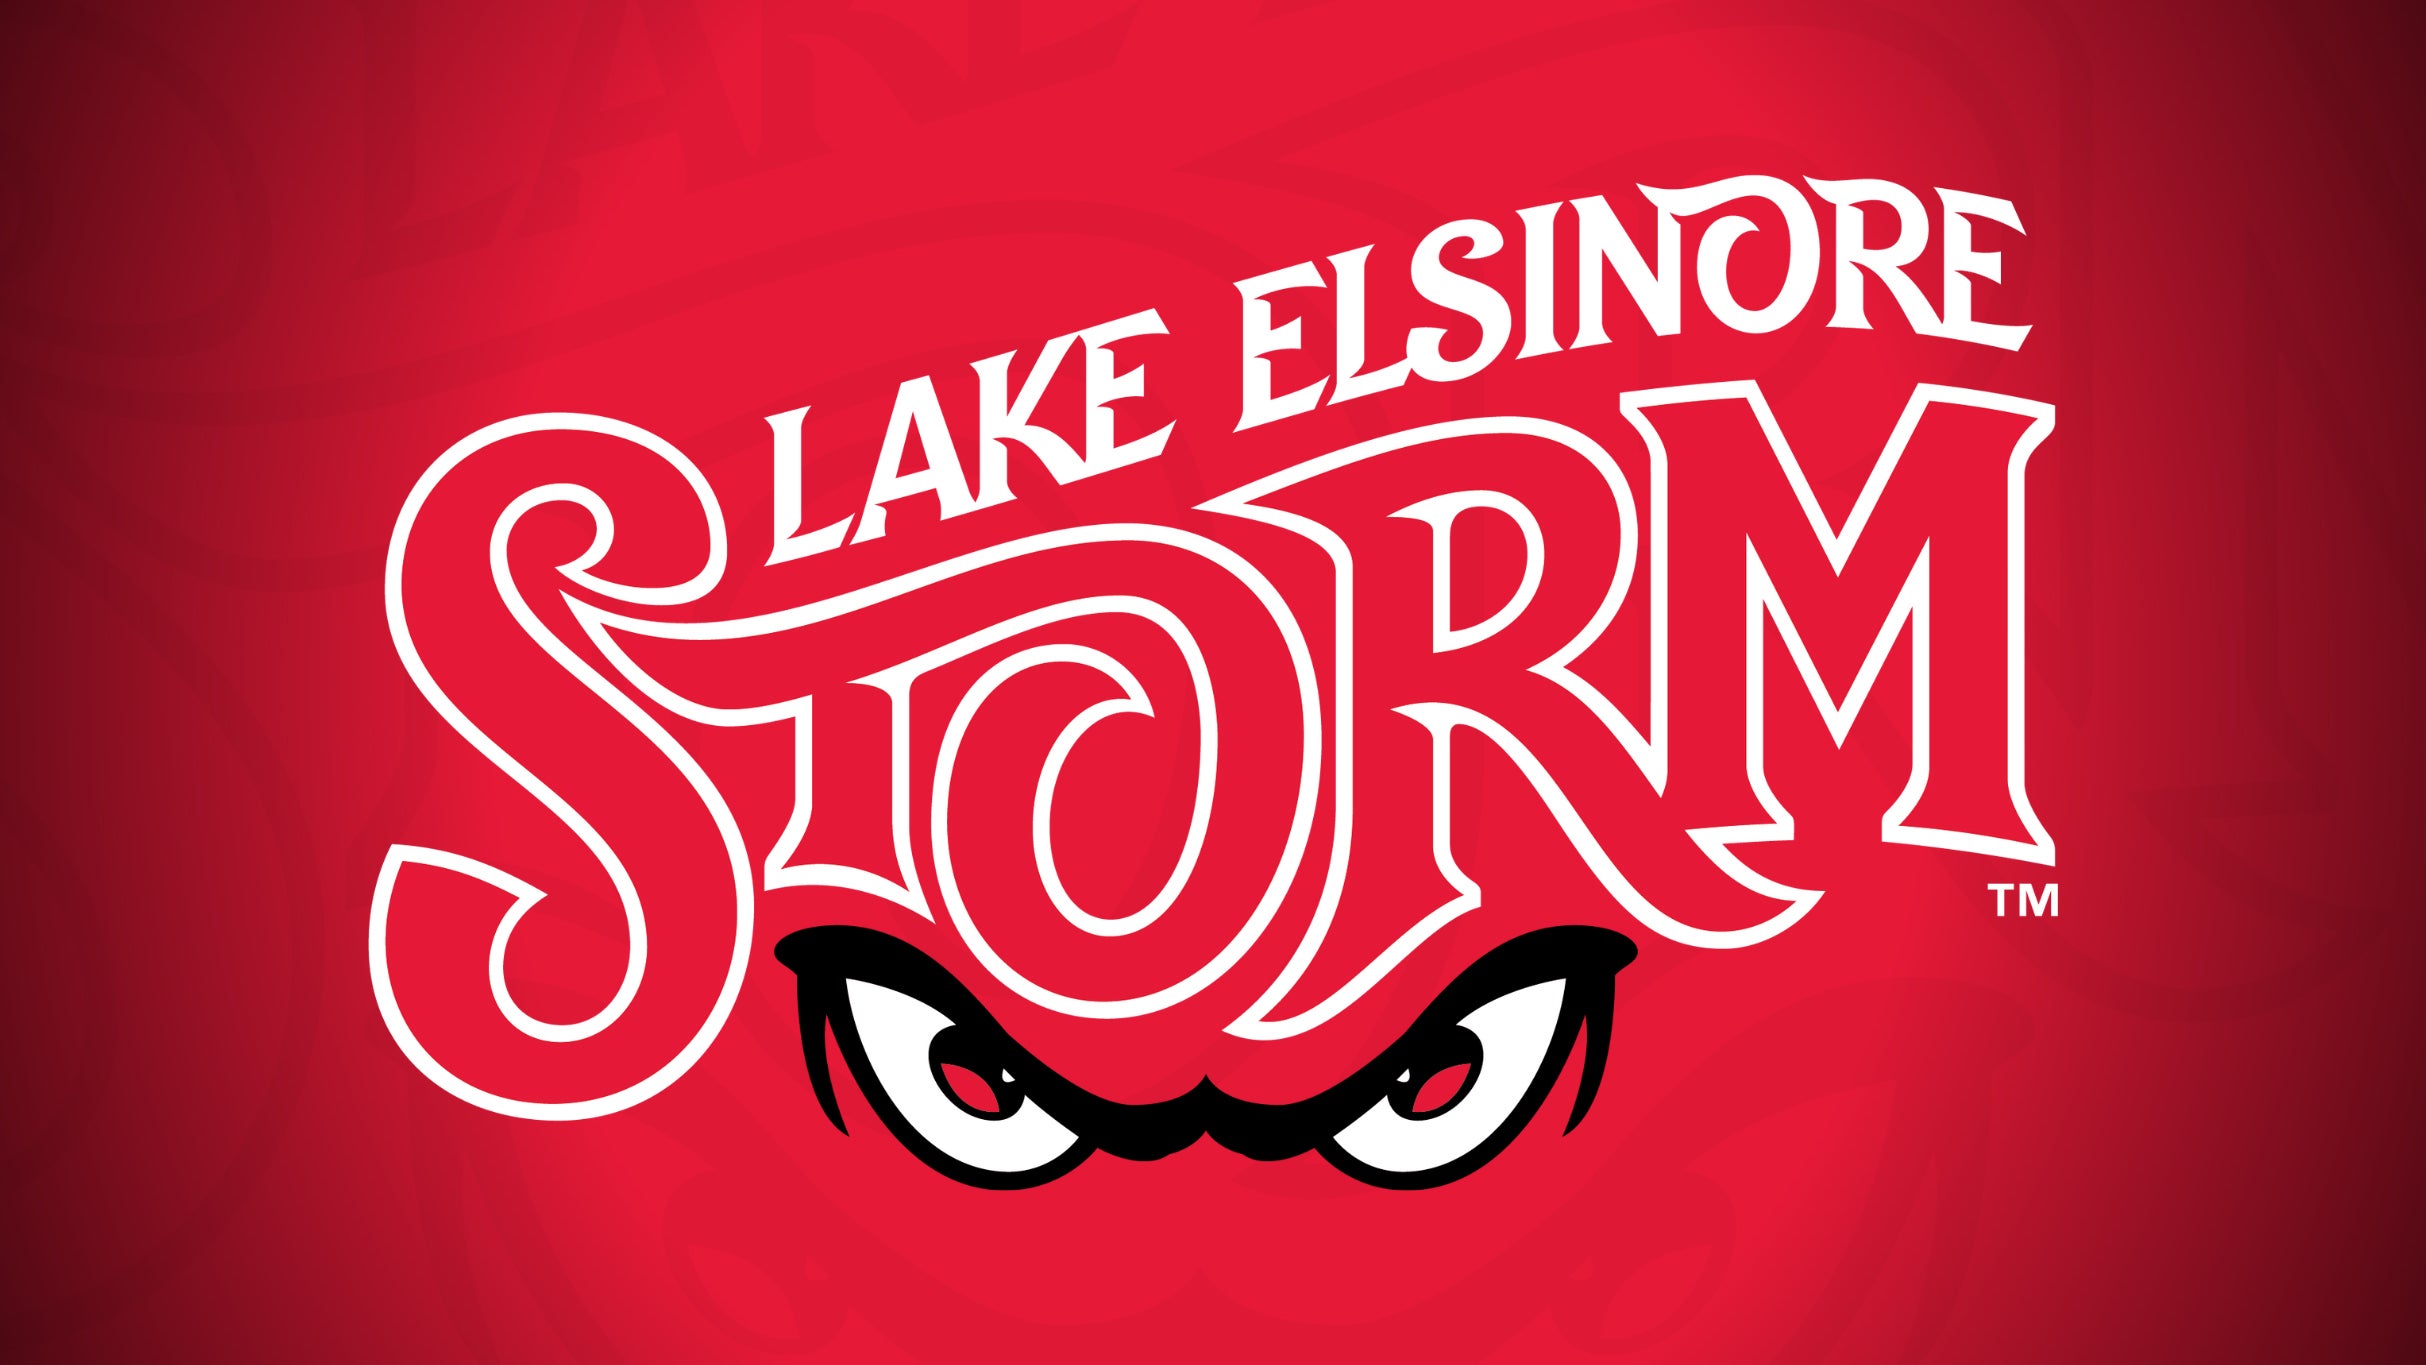 Lake Elsinore Storm vs. Visalia Rawhide